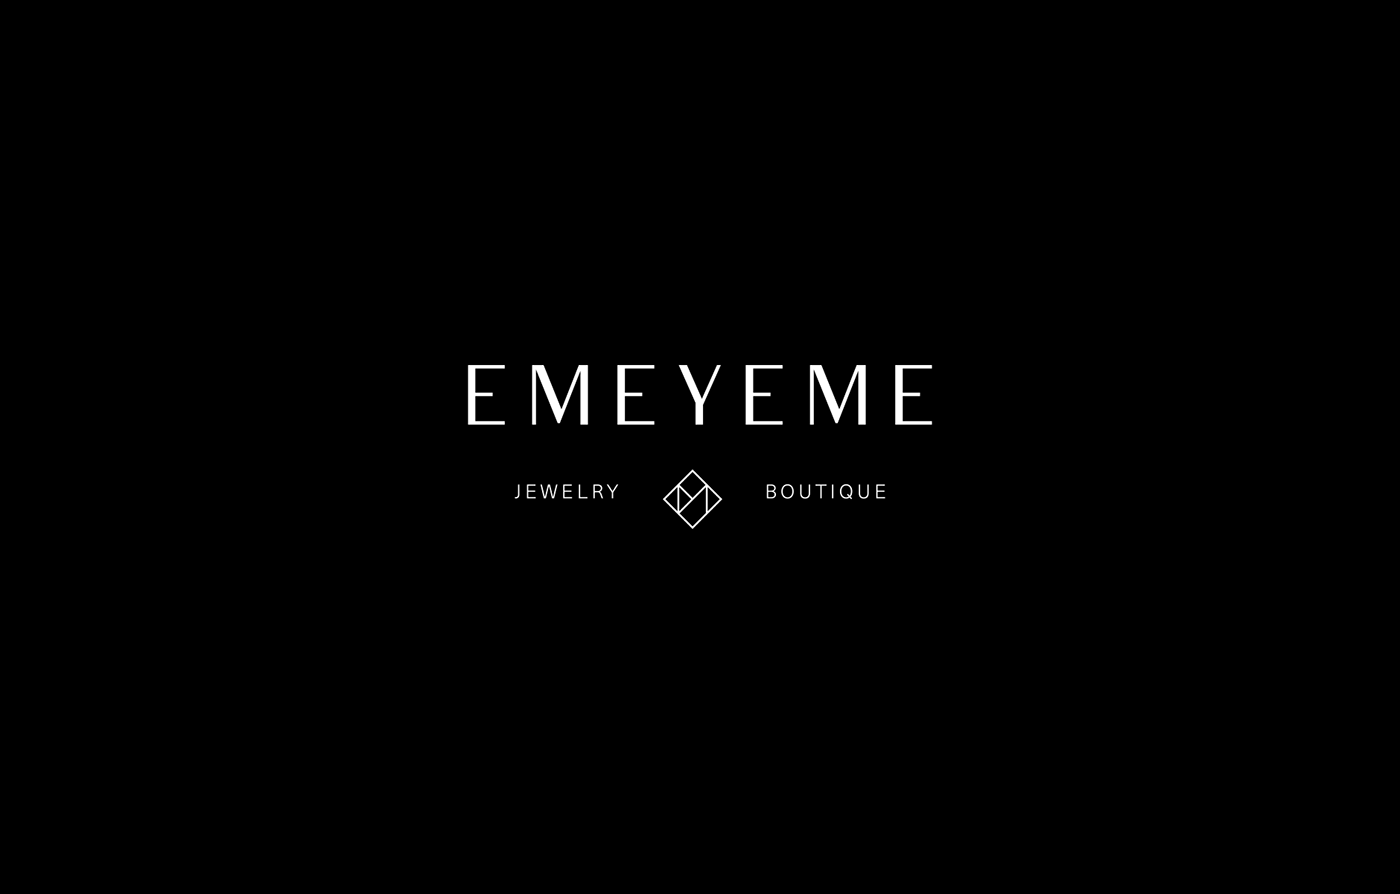 emeyeme jewelry boutique logo Logotype monogram